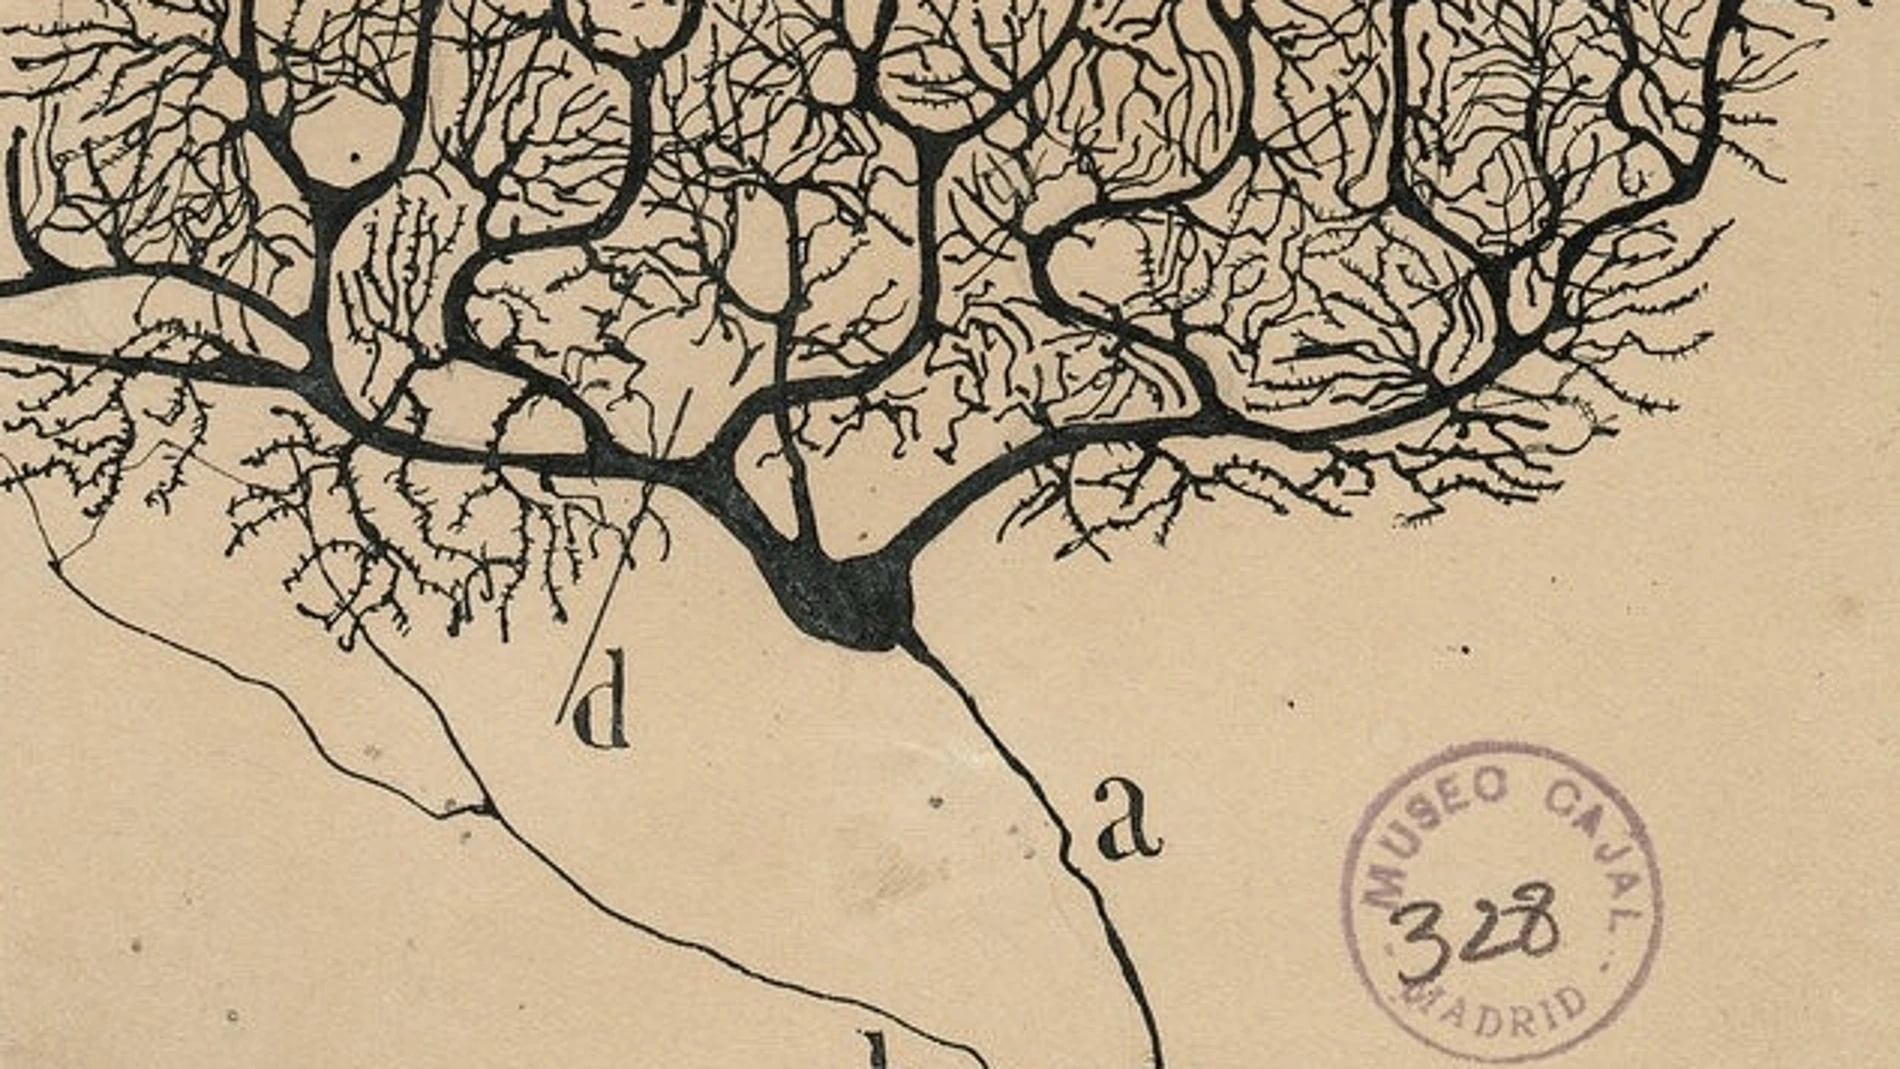 Neurona de Purkinje del cerebelo de un humano dibujada por Santiago Ramón y Cajal